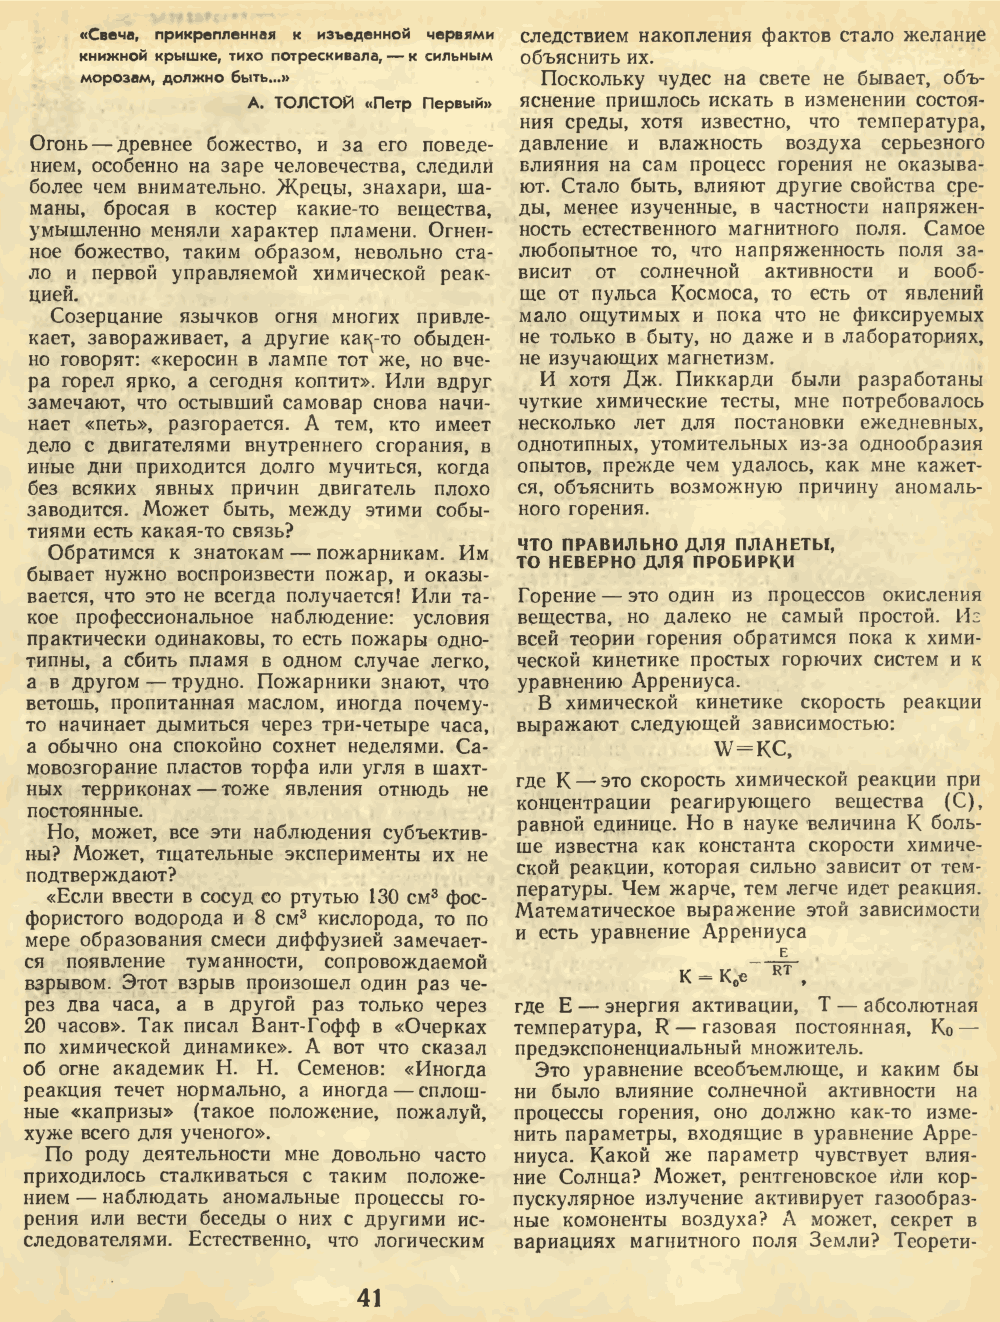 Почему трещит свеча? И.Ф. Усманов. Химия и жизнь, 1973, №12, с.40-43. Фотокопия №2